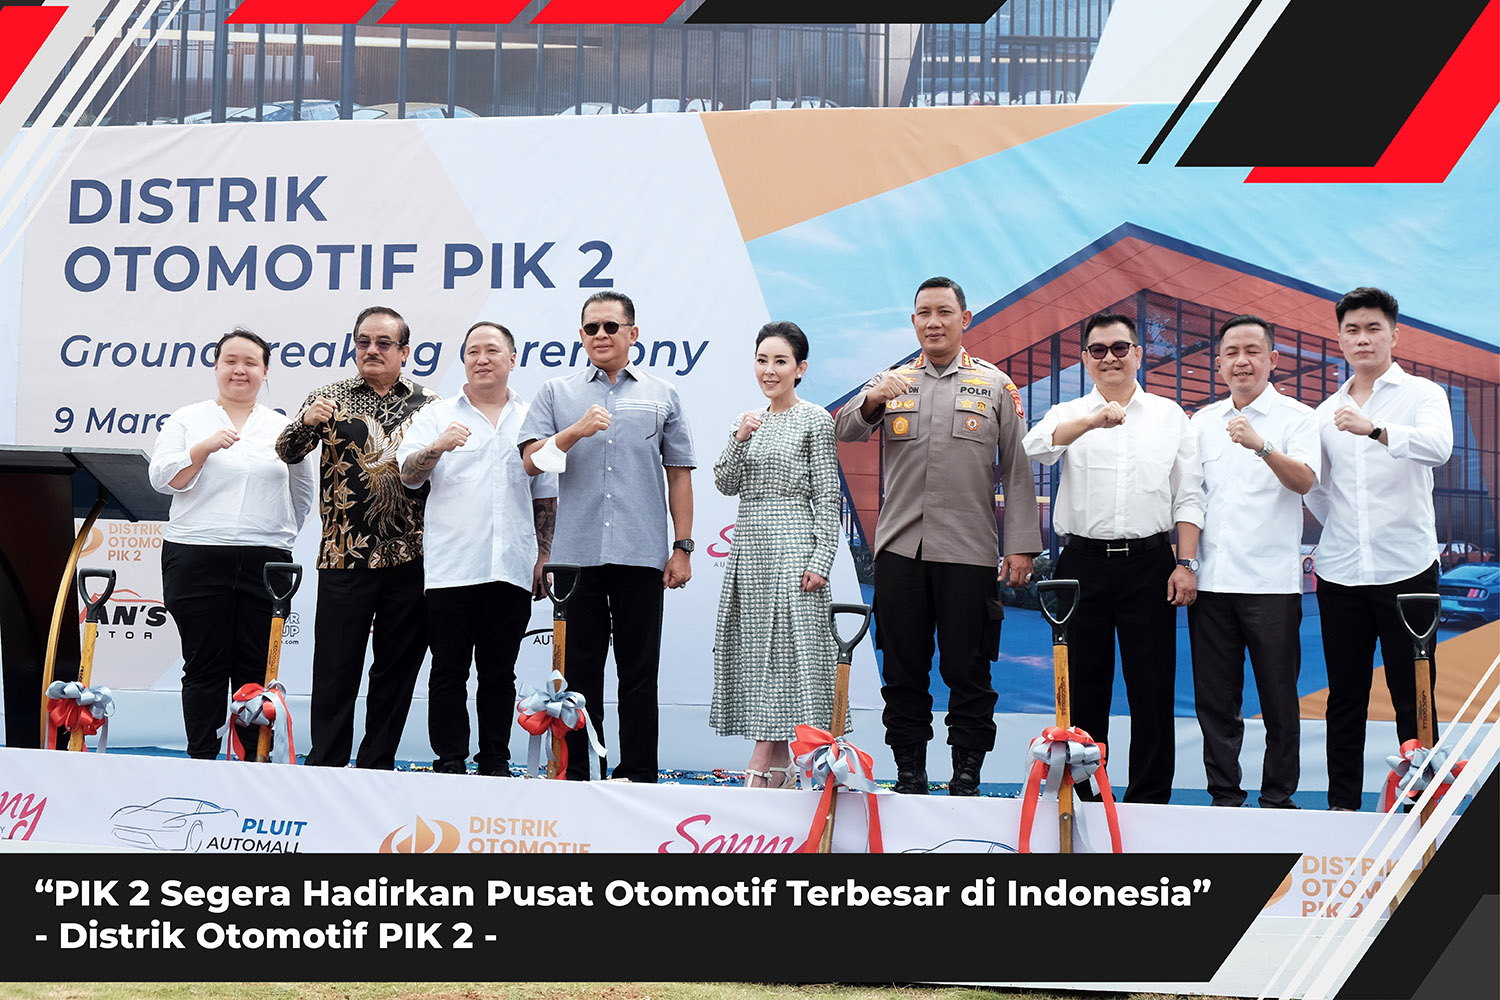 PIK2 Segera Hadirkan Pusat Otomotif Terbesar di Indonesia, Distrik Otomotif PIK2